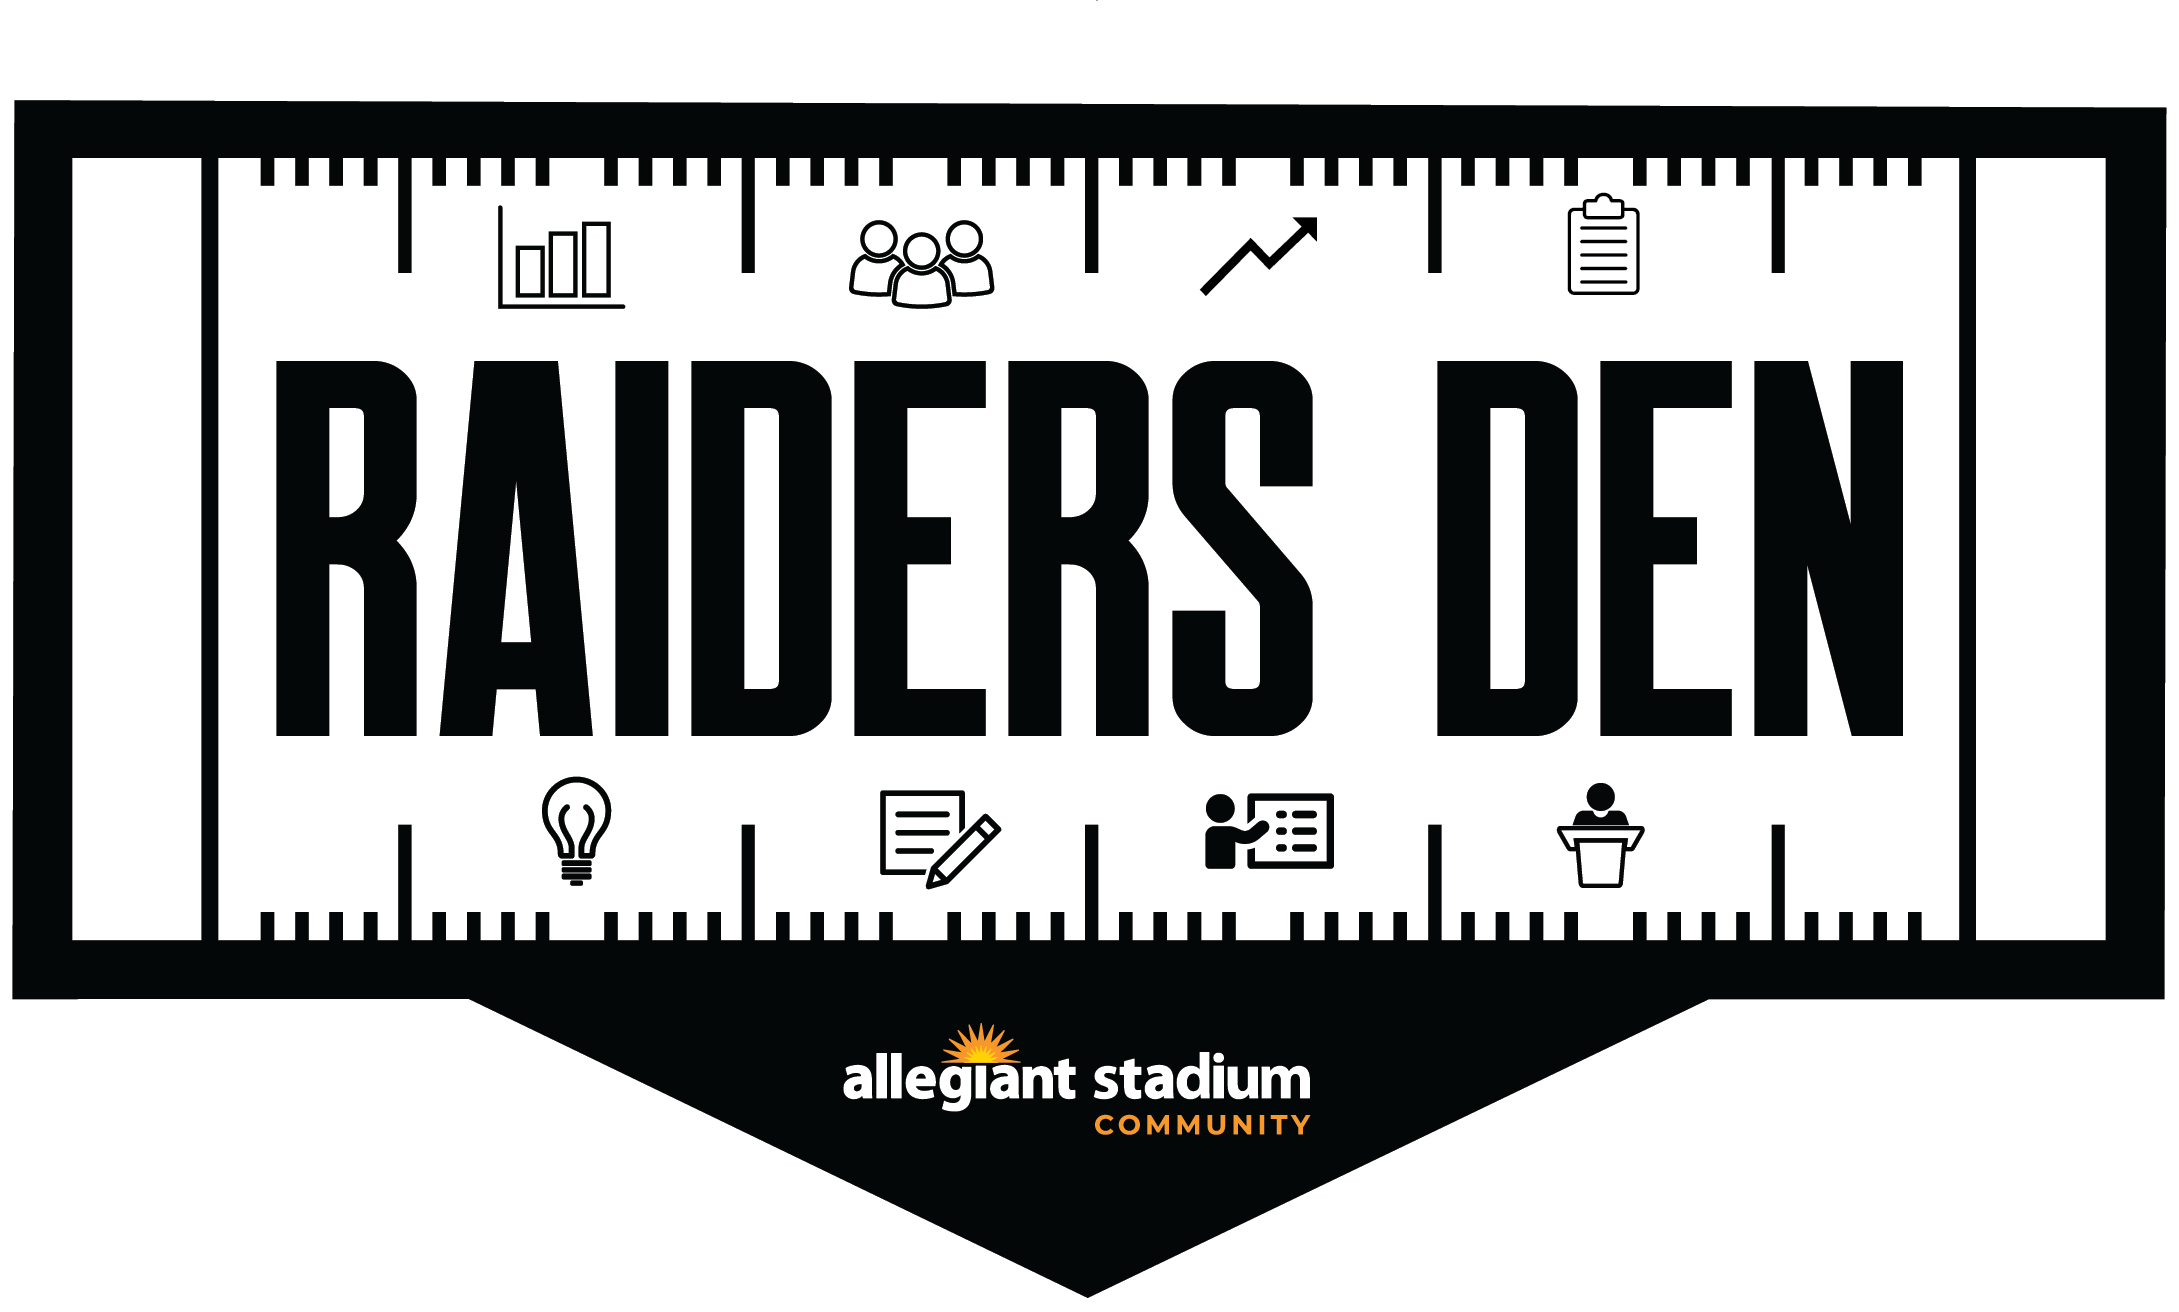 More Info for Allegiant Stadium announces Raiders Den Community Program